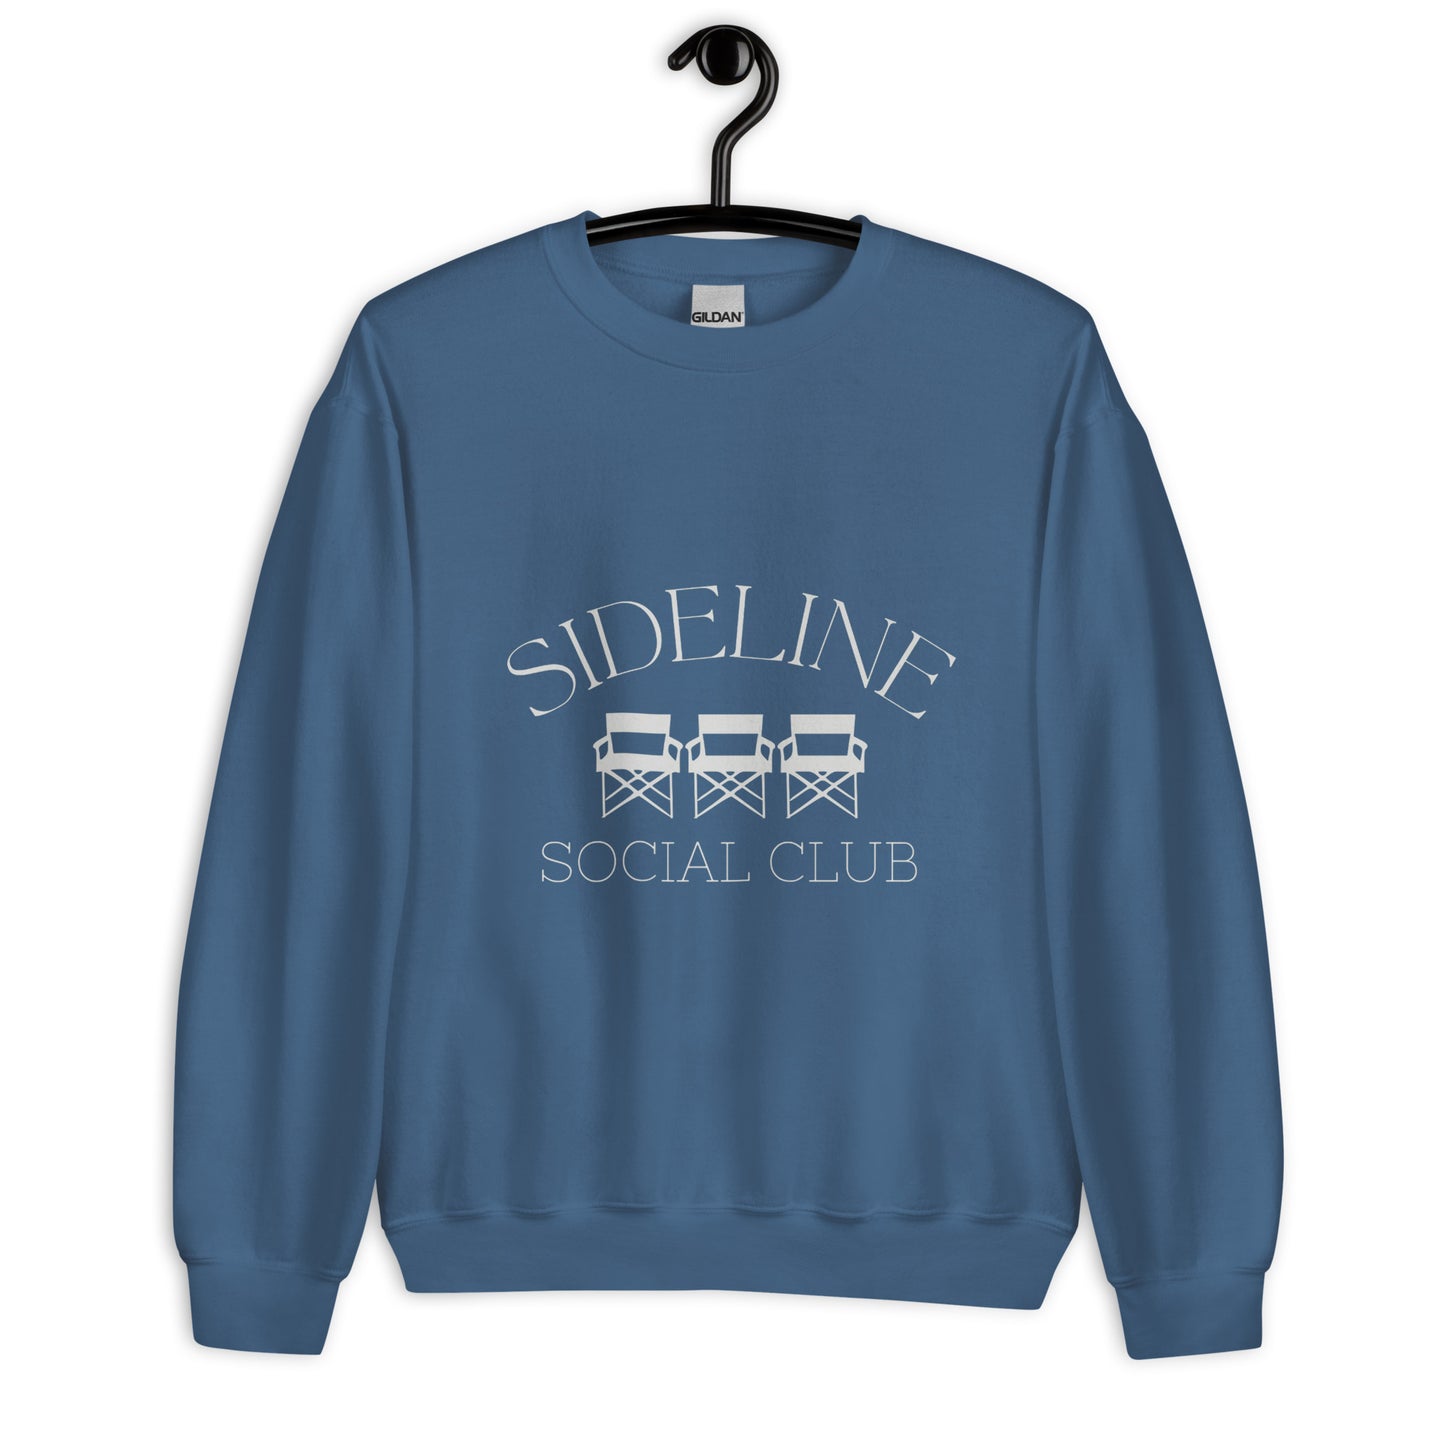 Sideline Social Club Crew